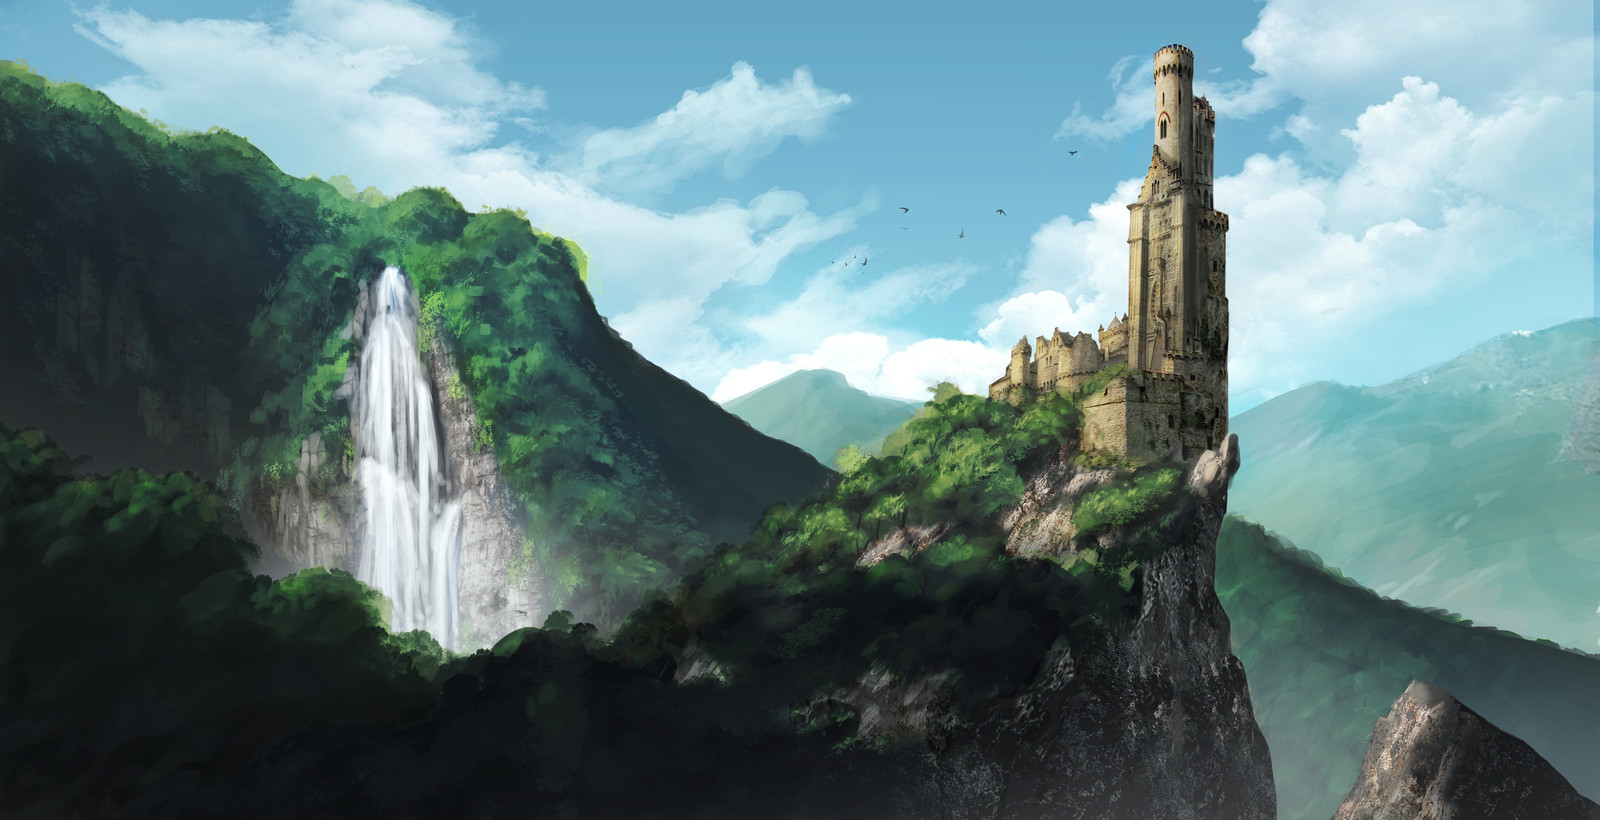 Castle scenery